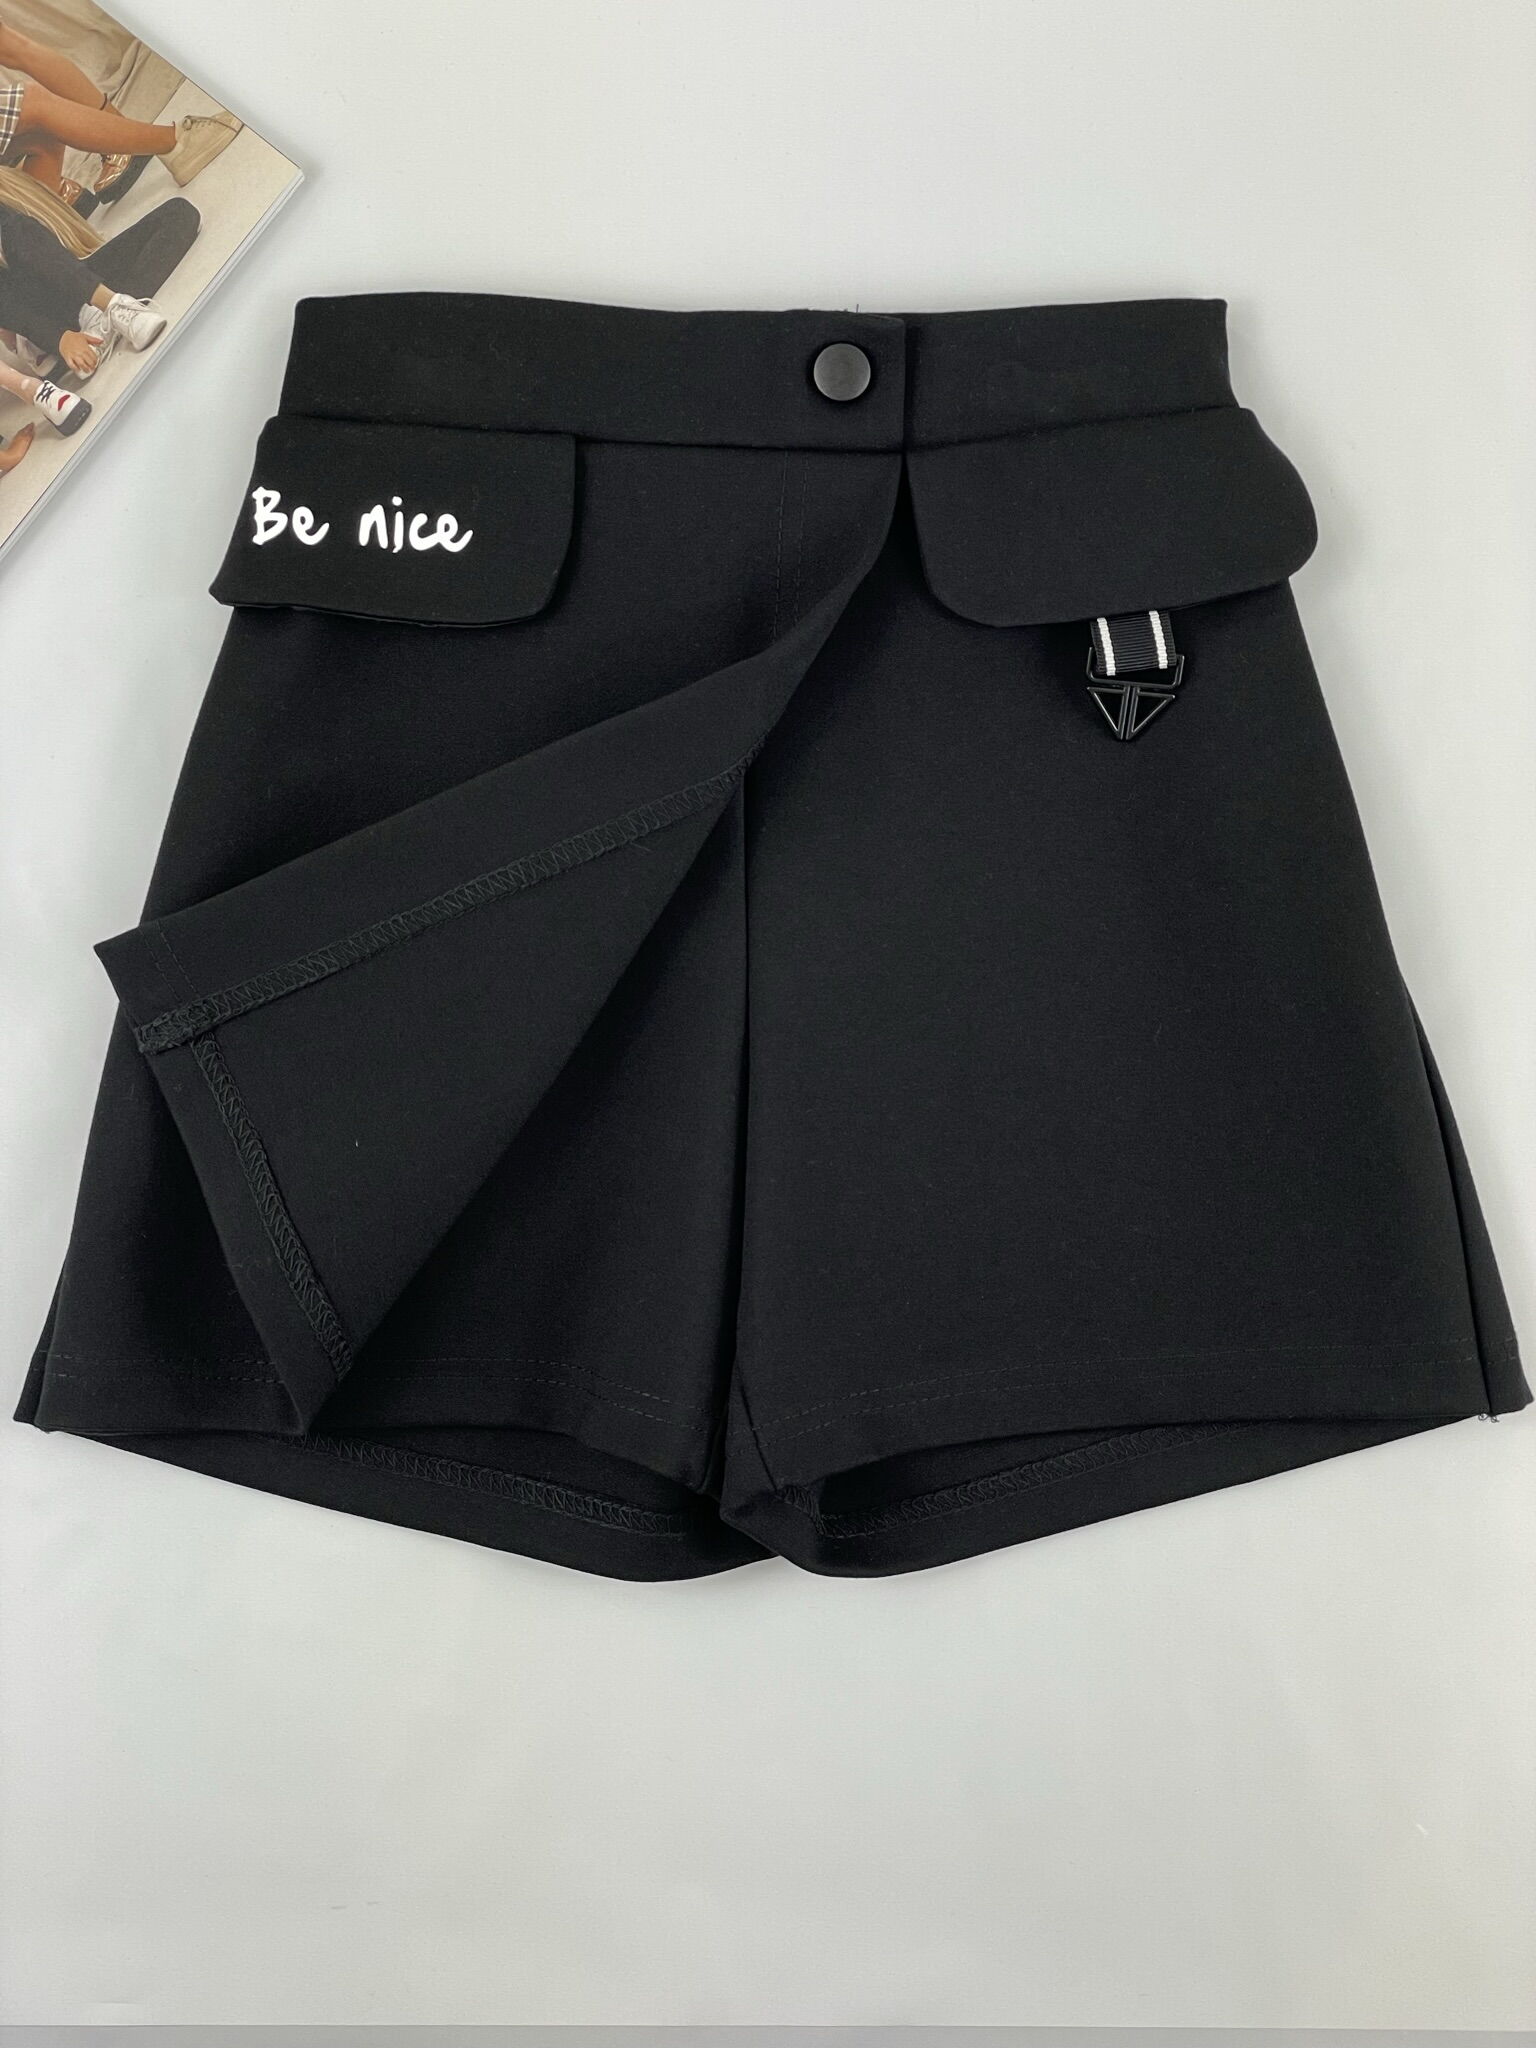 Юбка-шорты для девочки Mevis черная 4110-02 - купить